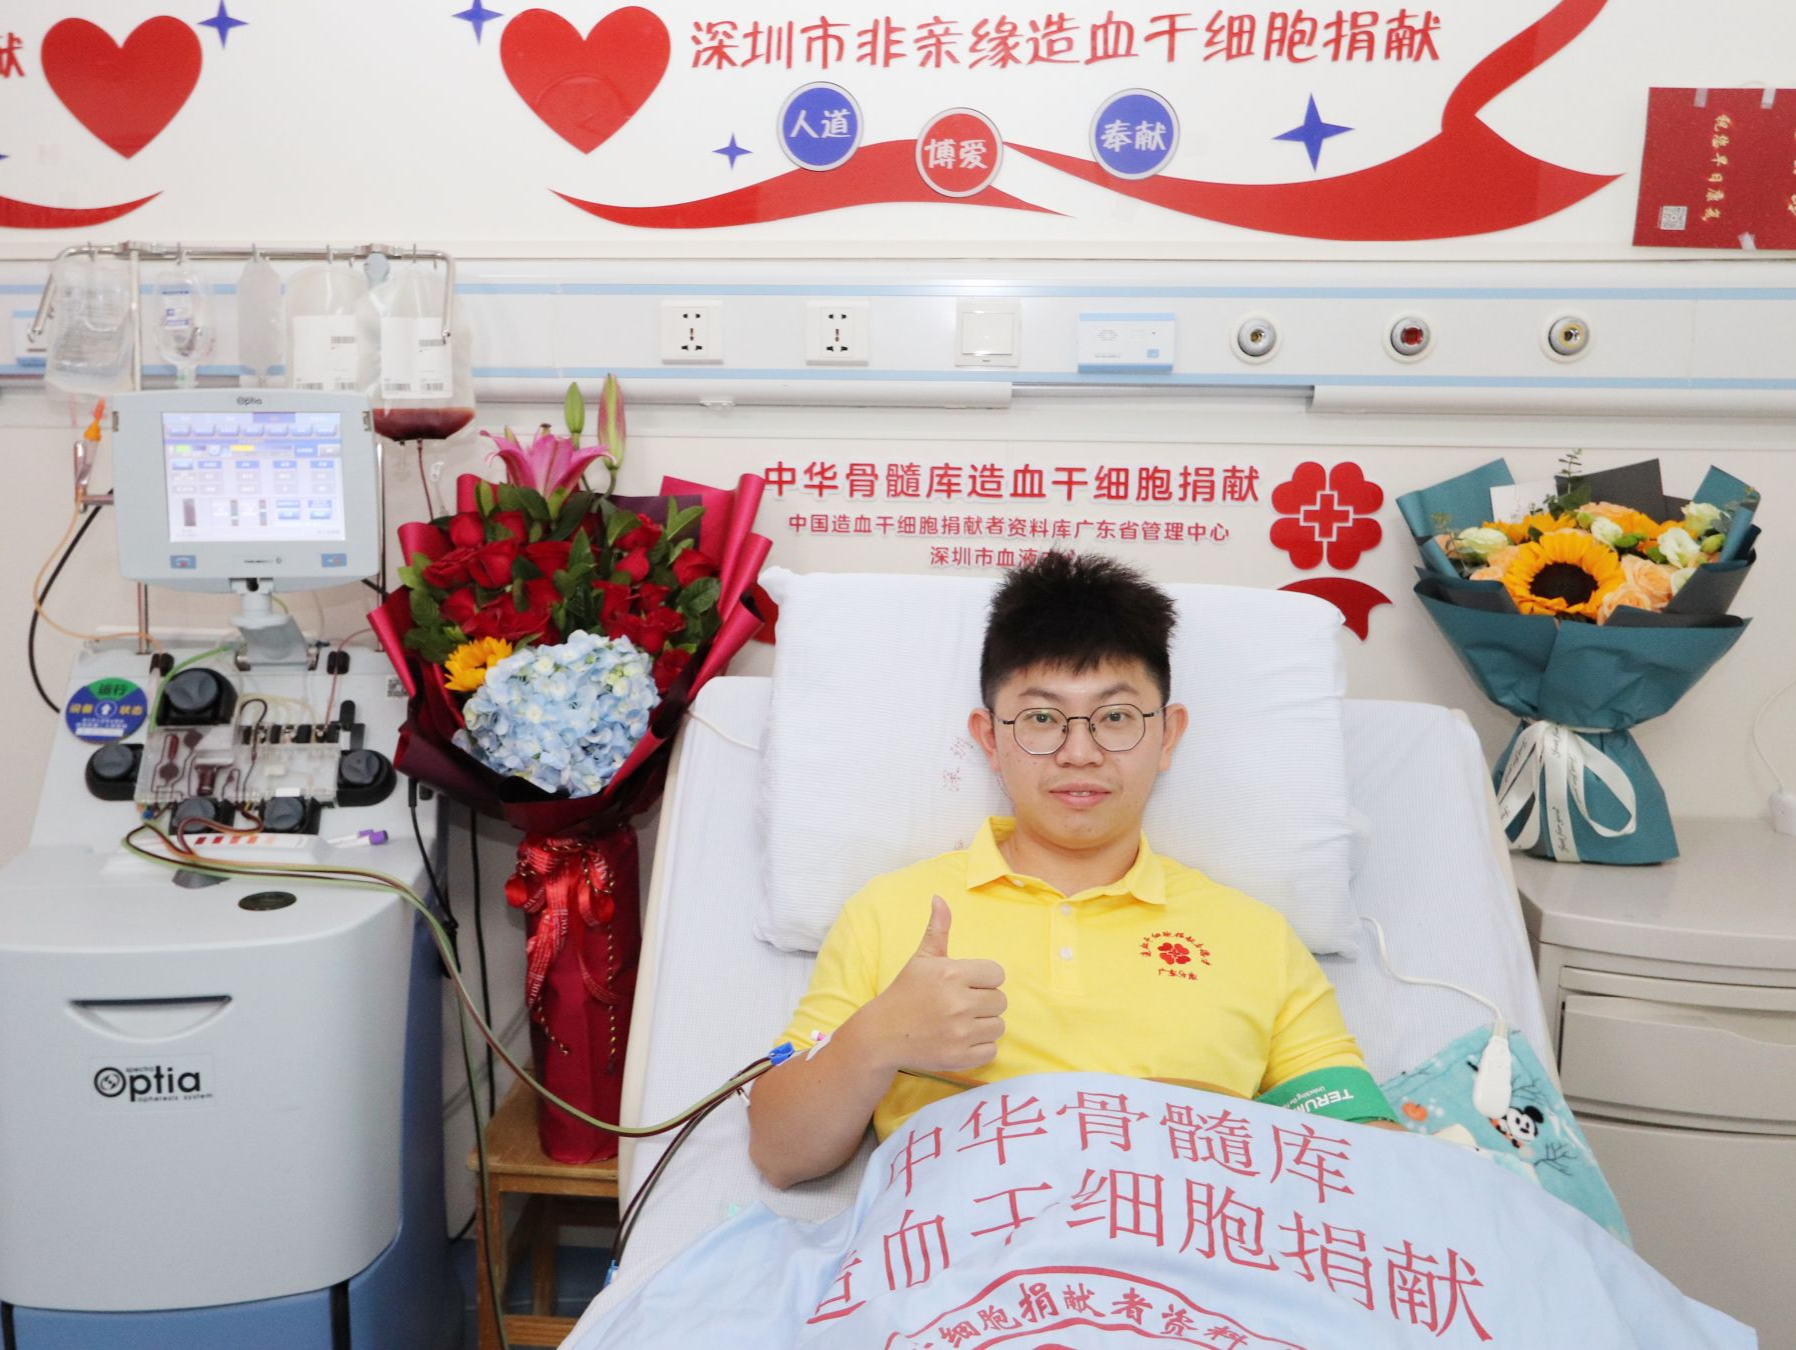 “帮到别人是我的荣幸” 深圳成为全国首个年度捐献造血干细胞突破100例城市